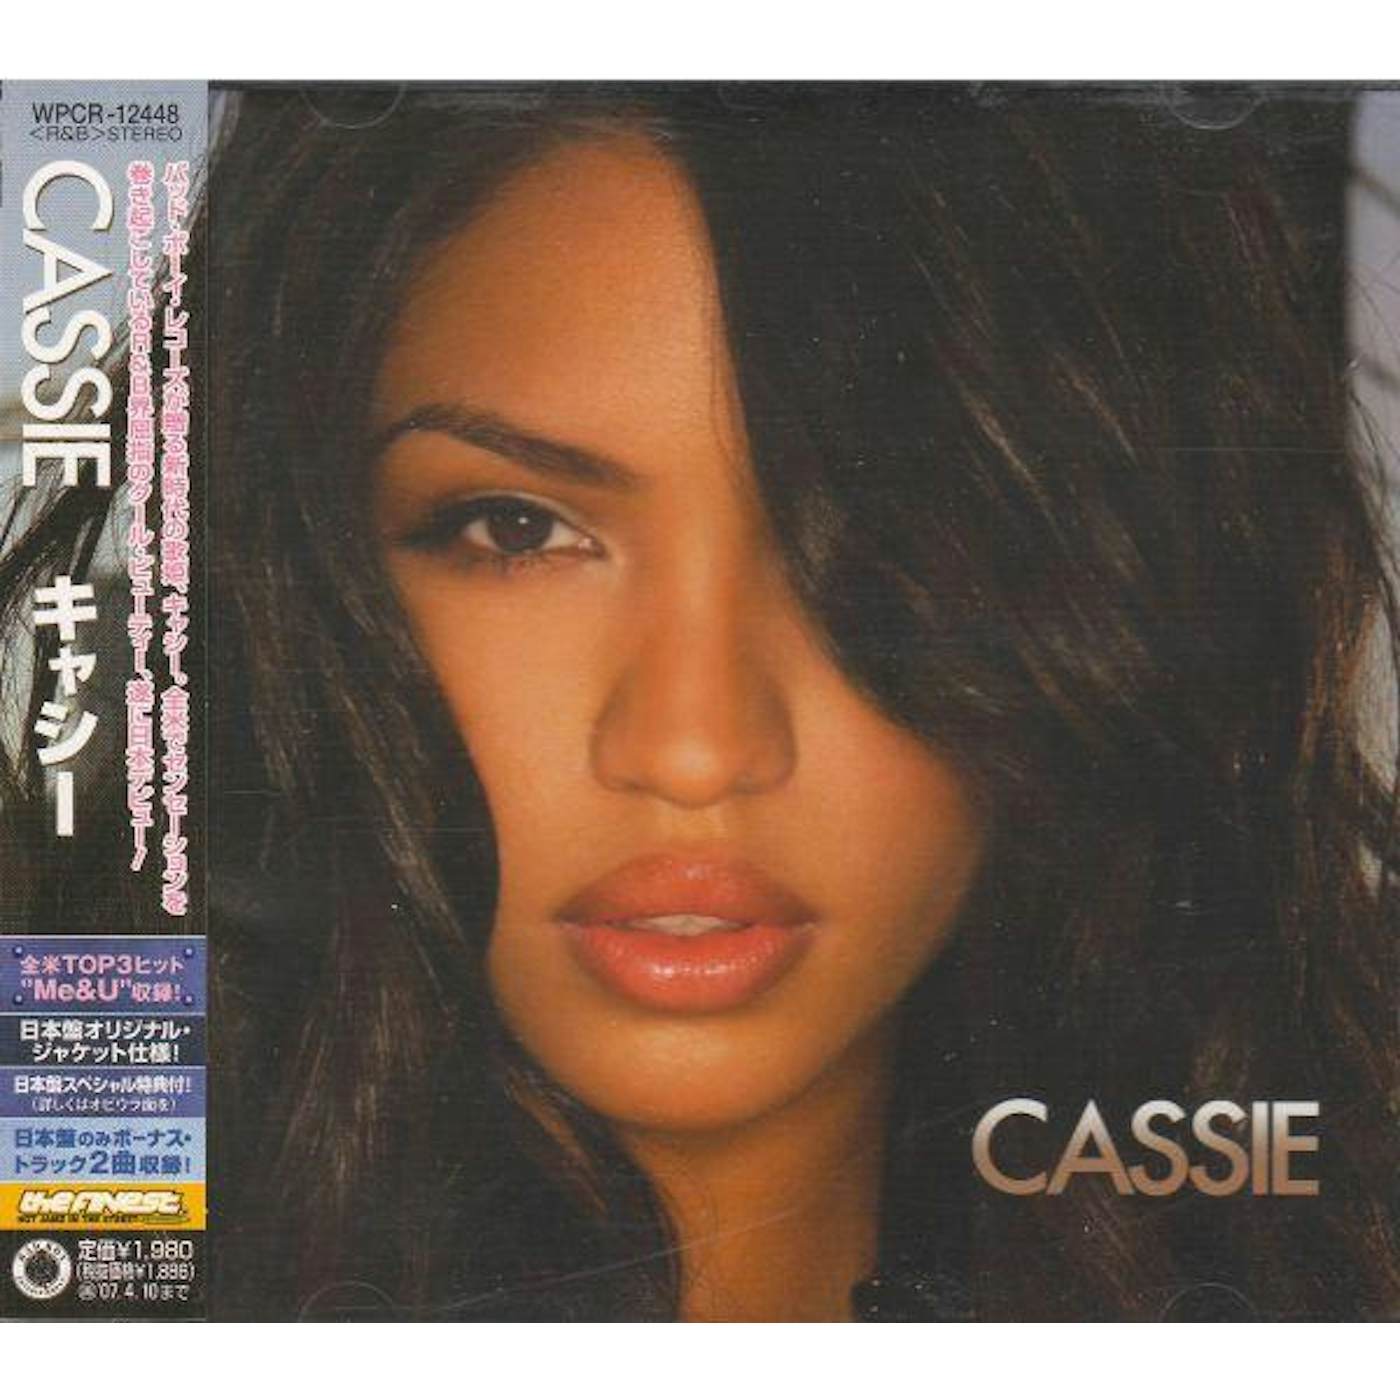 CASSIE CD